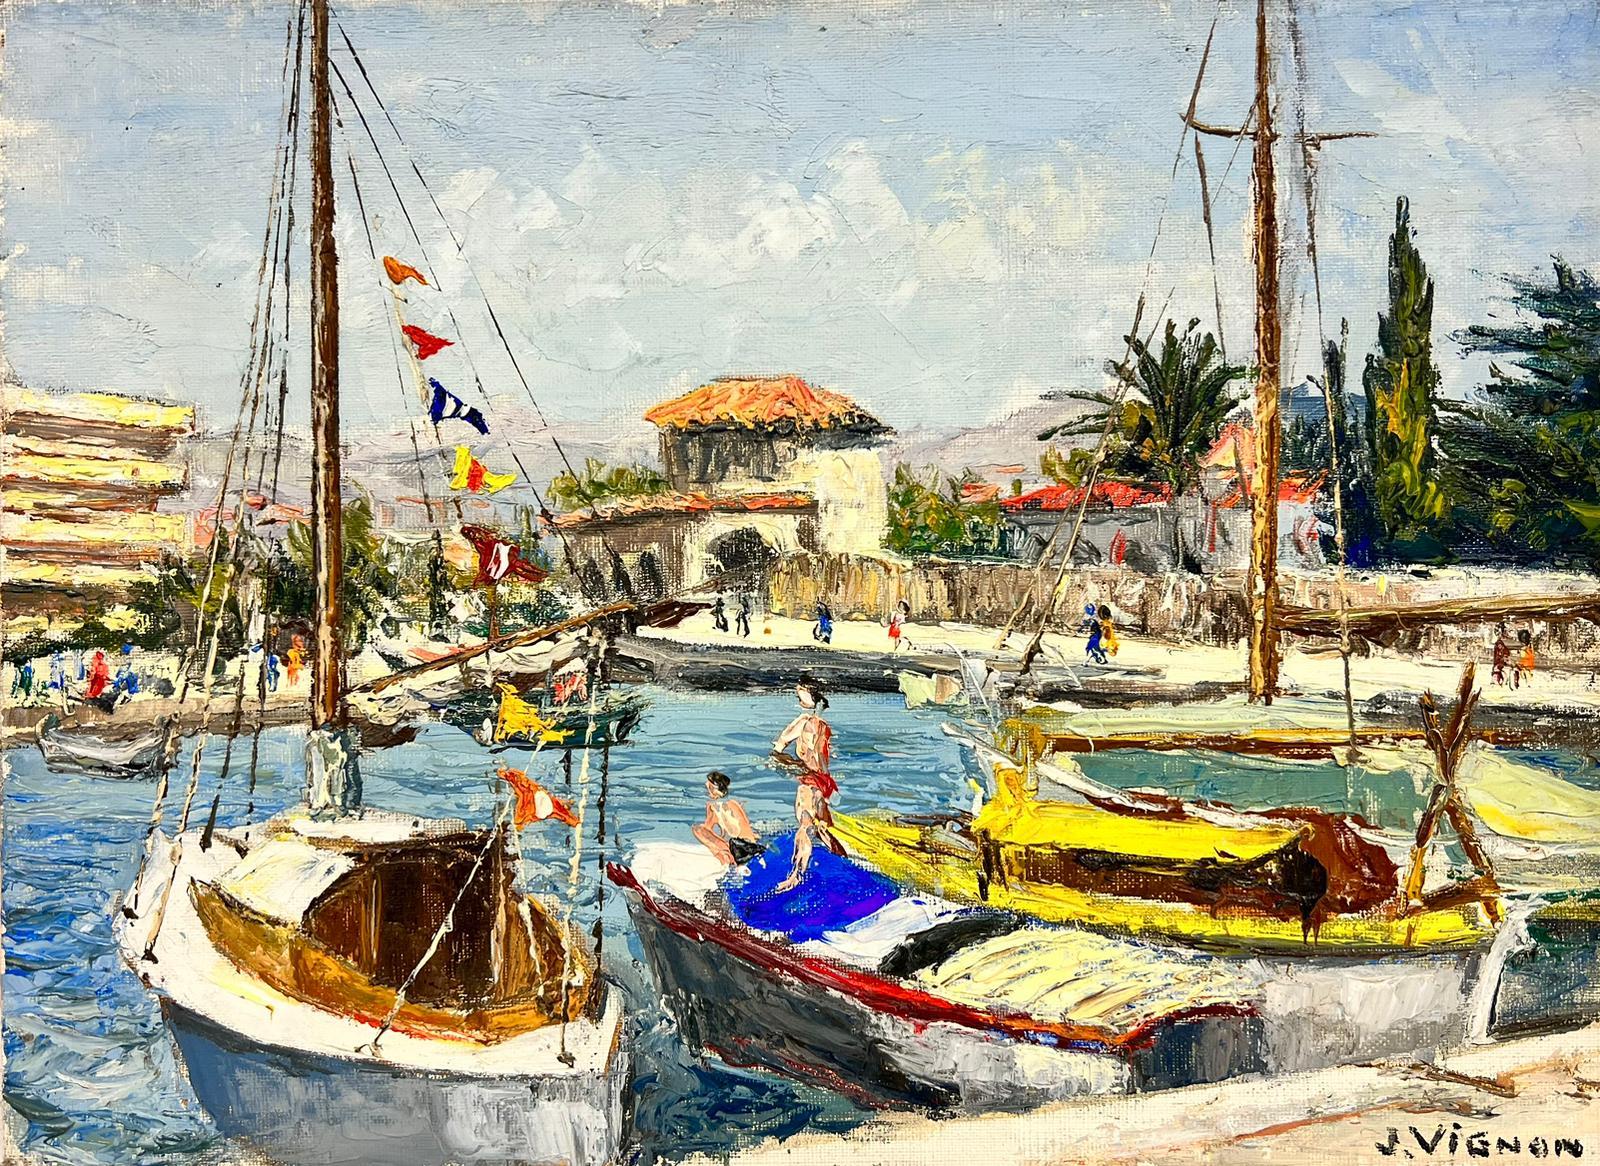 Landscape Painting Josine Vignon - Cagnes Sur Mer Journée d'été au port Huile épaisse Impasto